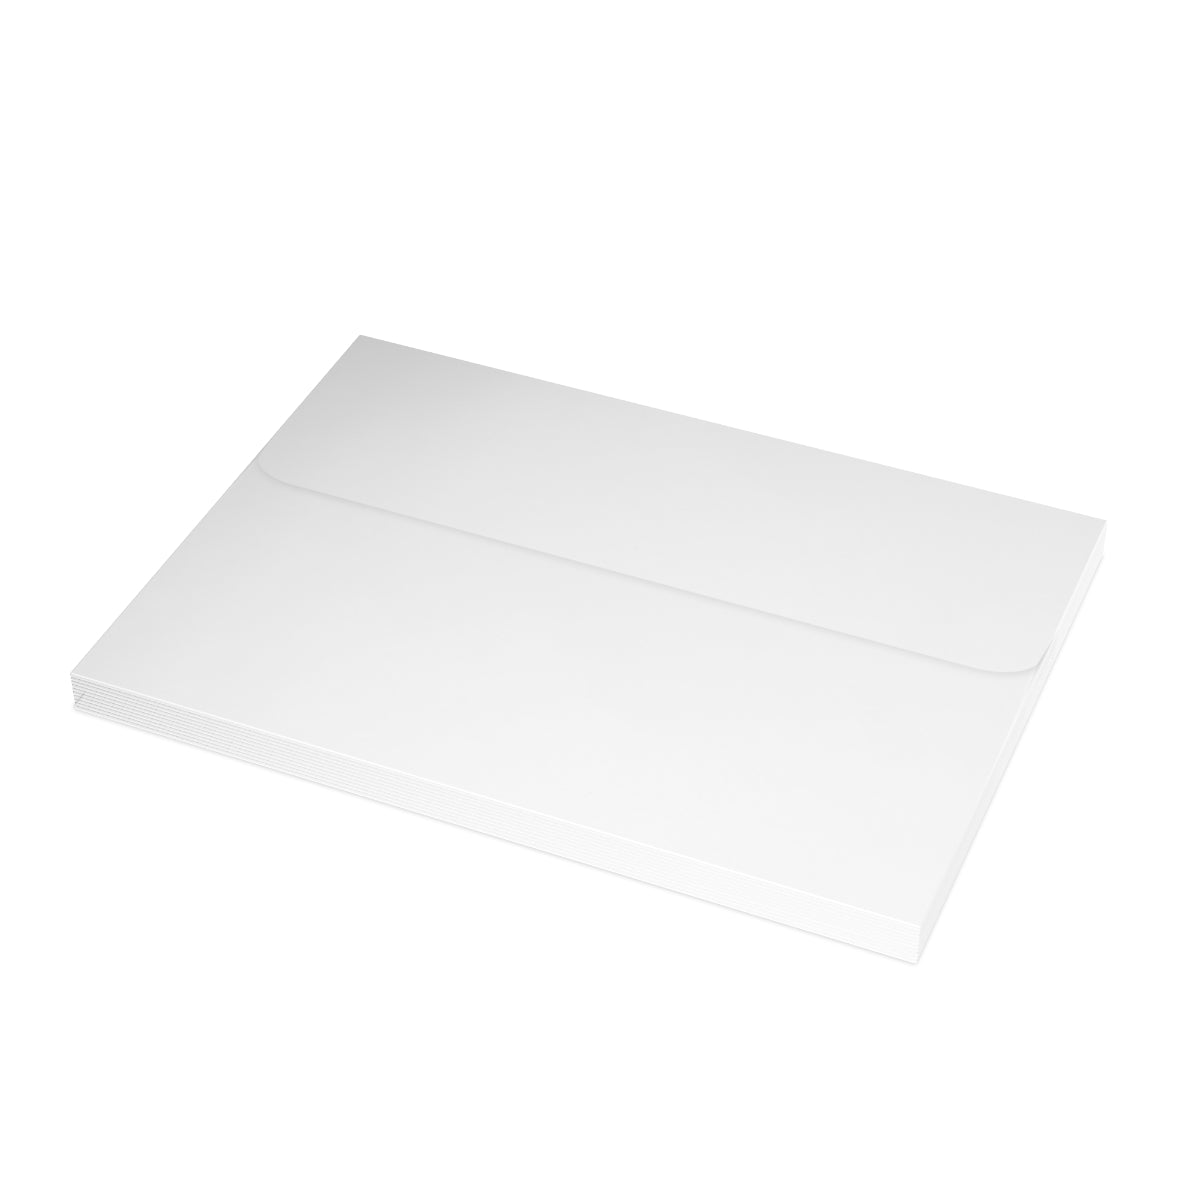 Cartes de notes mates pliées St Louis + enveloppes (10 pièces)